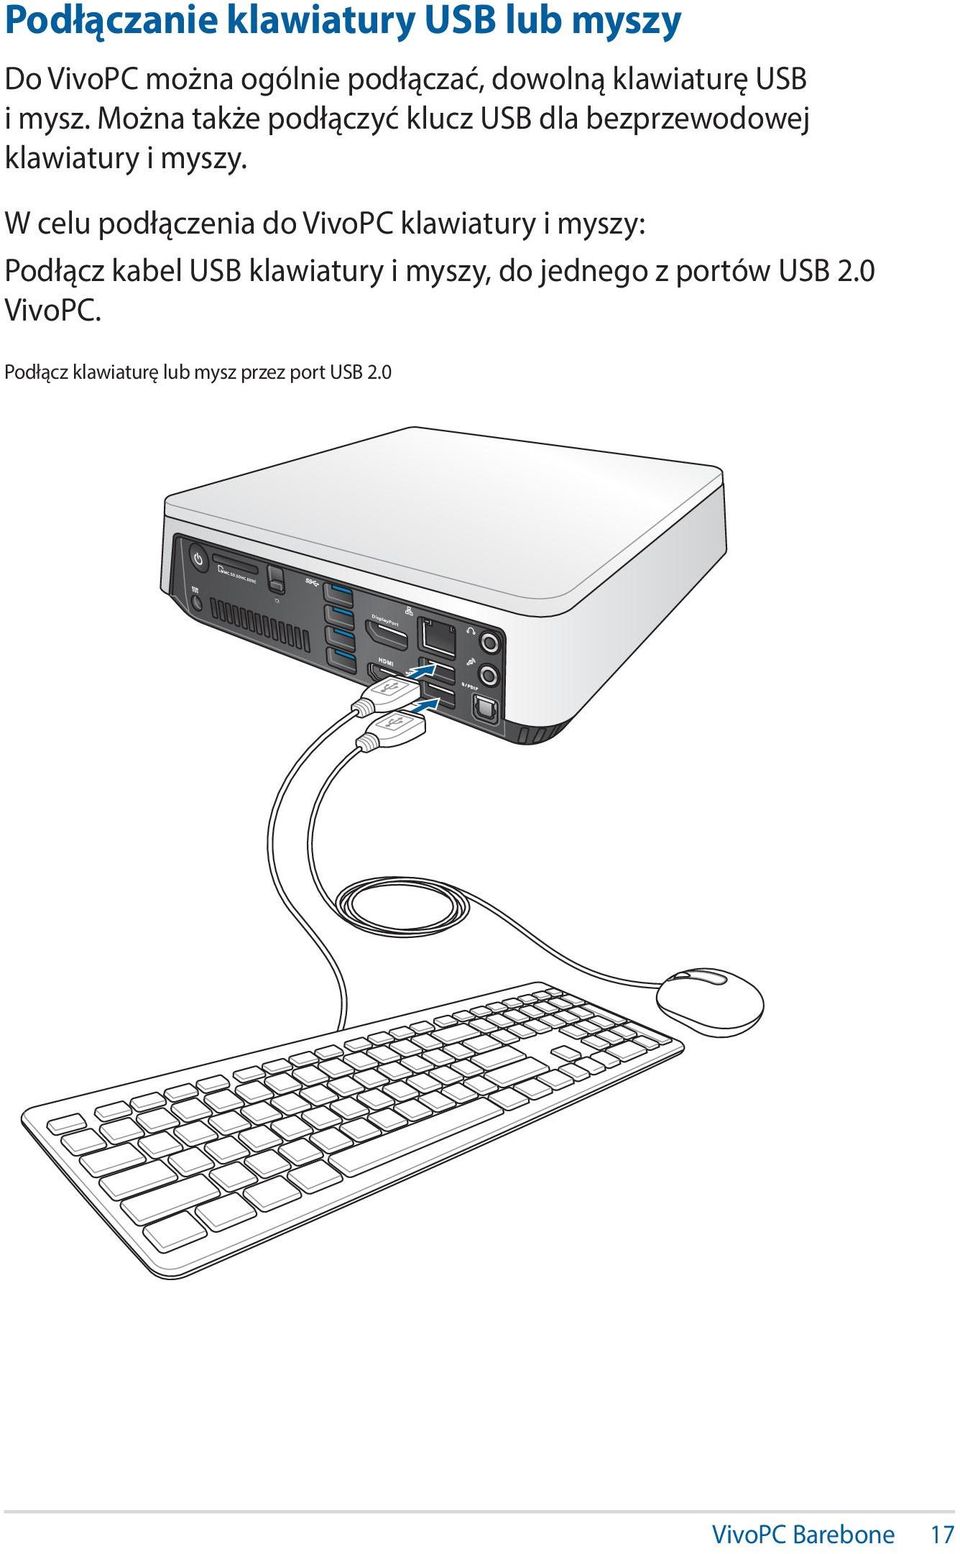 W celu podłączenia do VivoPC klawiatury i myszy: Podłącz kabel USB klawiatury i myszy, do